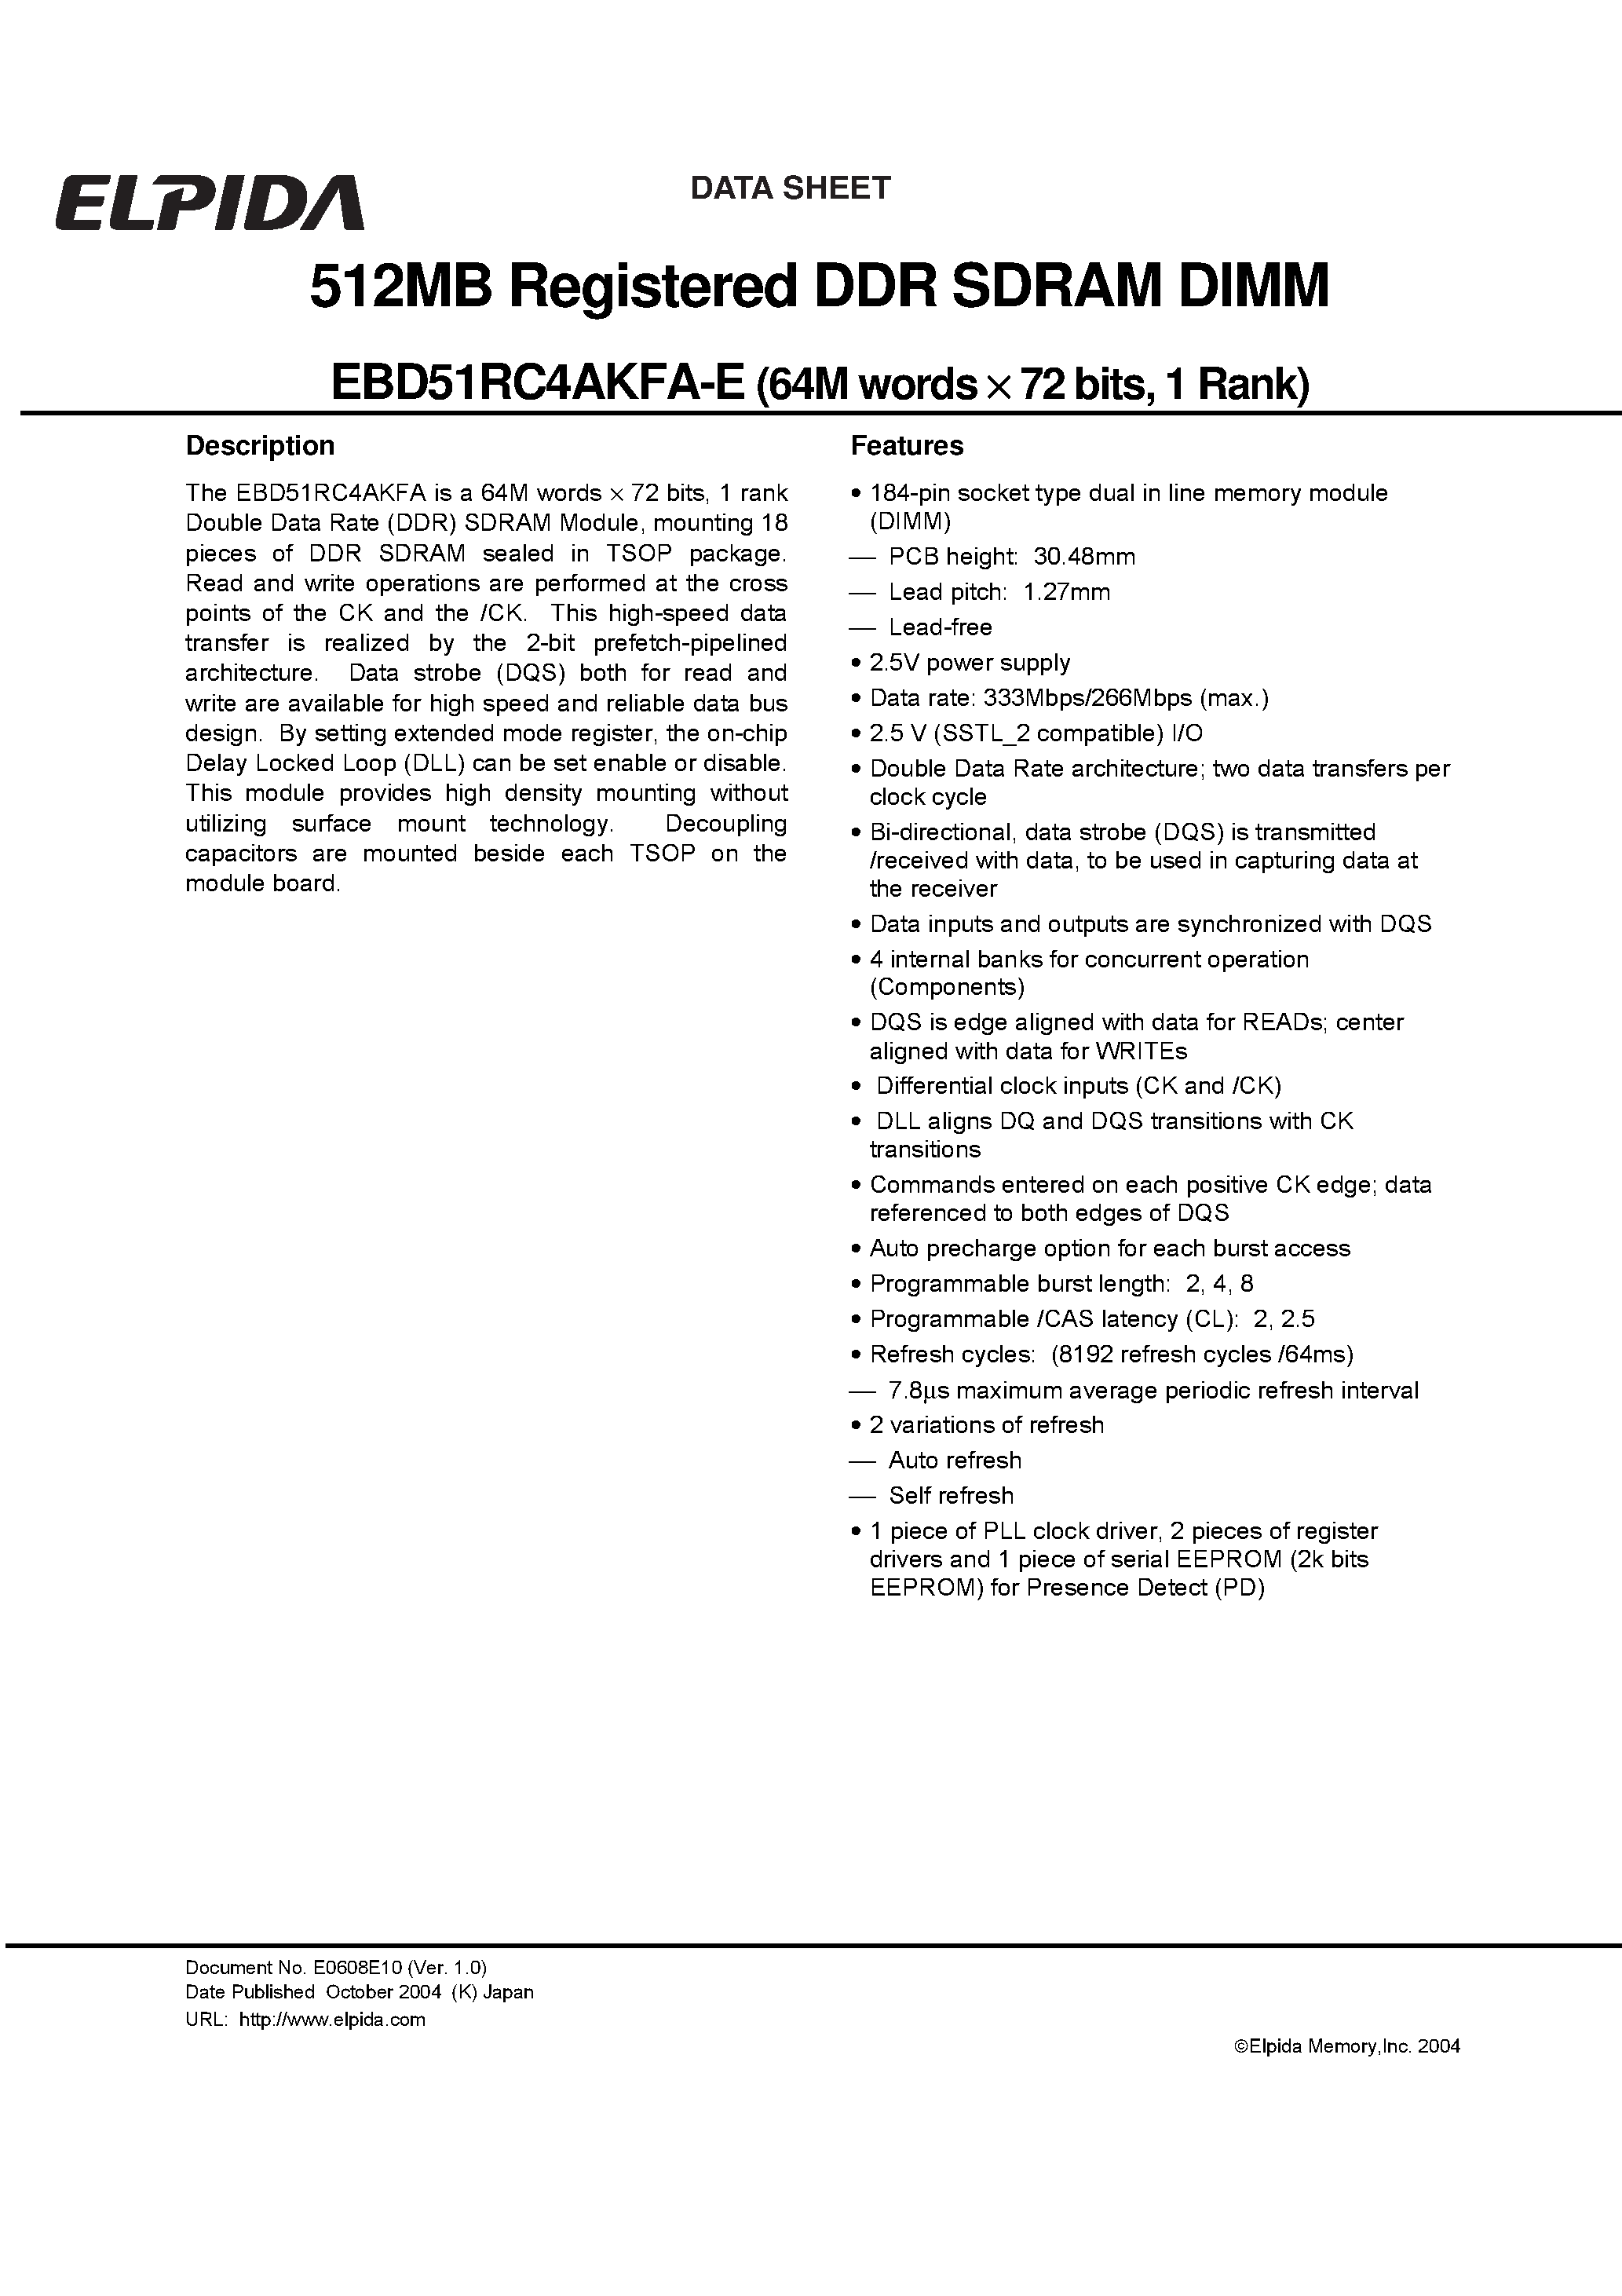 Даташит EBD51RC4AKFA-E - 512MB Registered DDR SDRAM DIMM страница 1